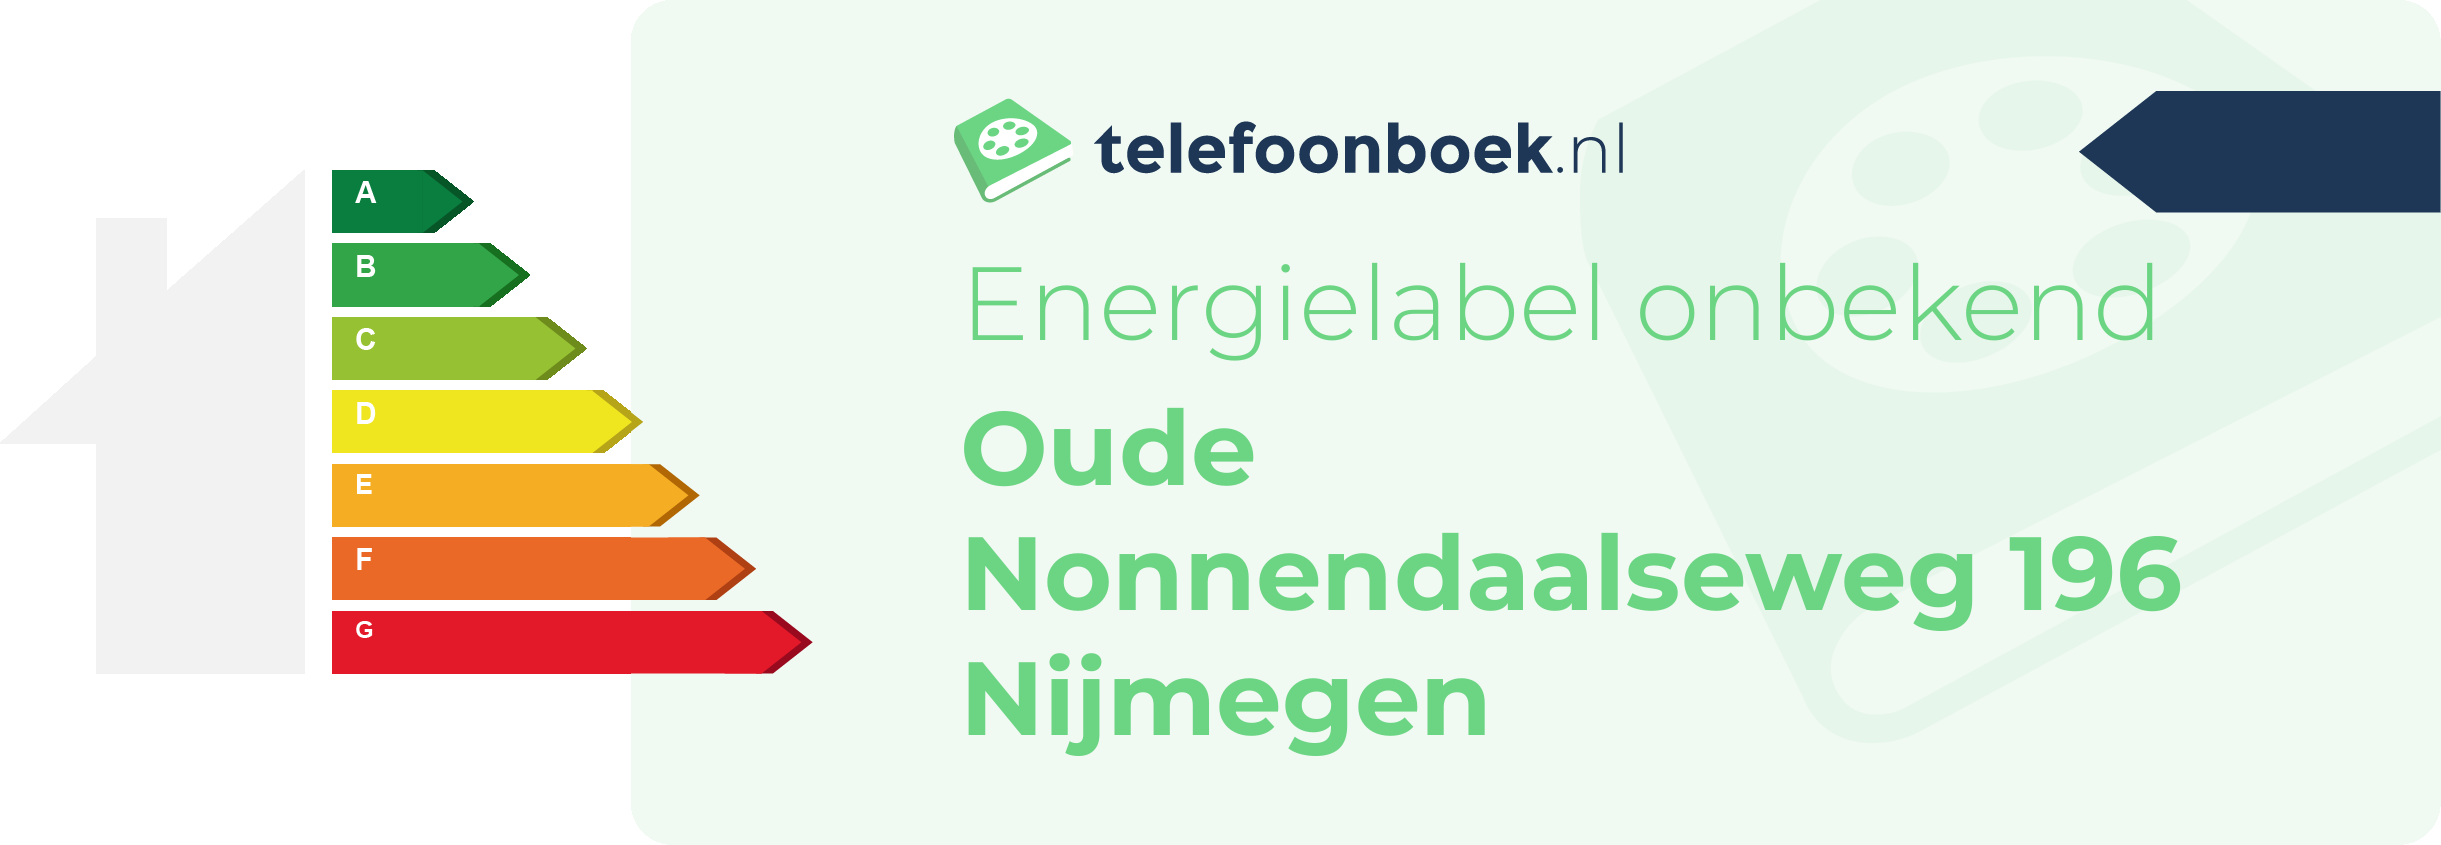 Energielabel Oude Nonnendaalseweg 196 Nijmegen